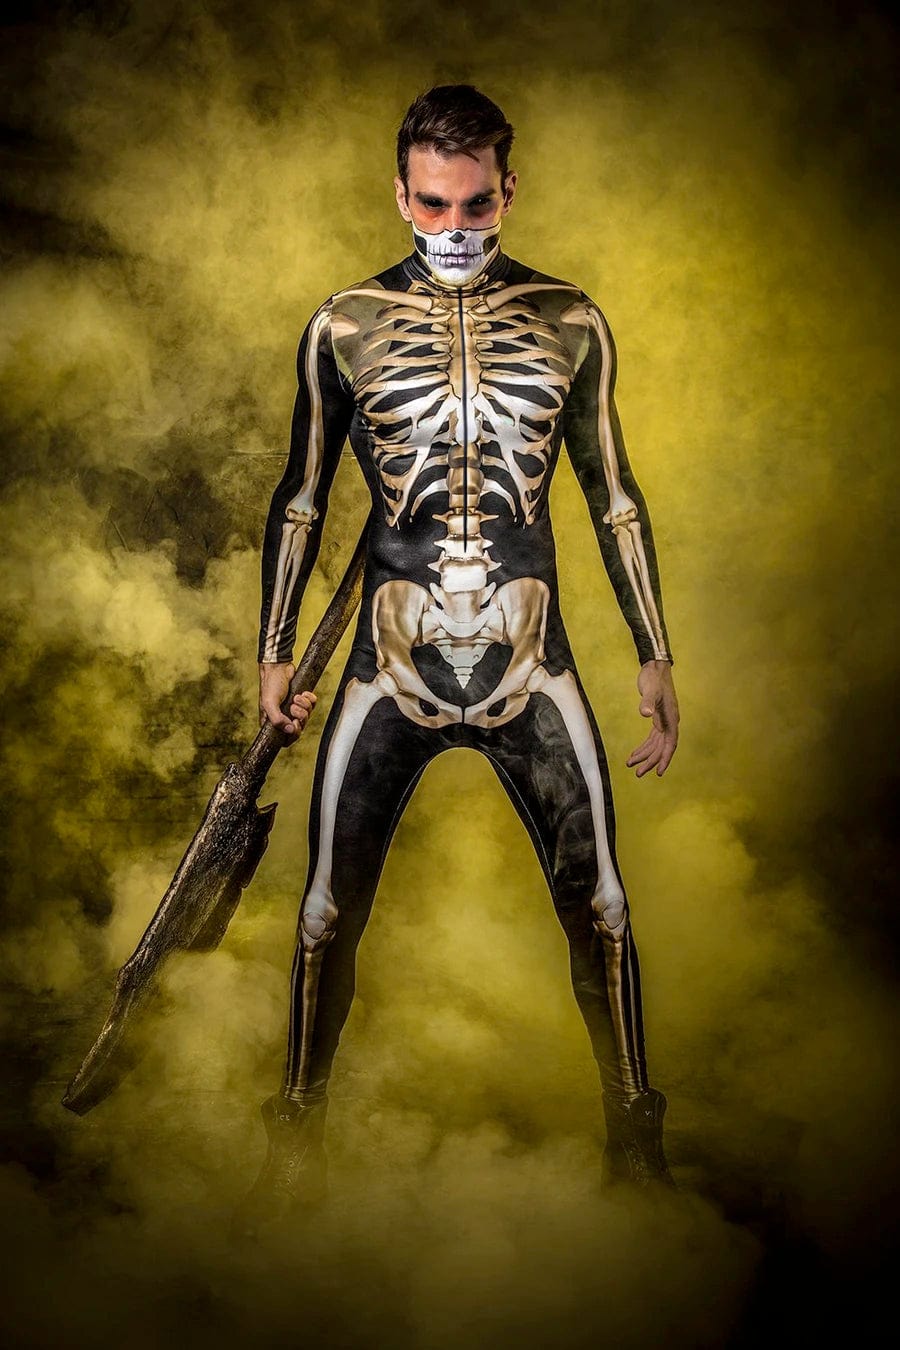 Men's Graveyard Skeleton Costume